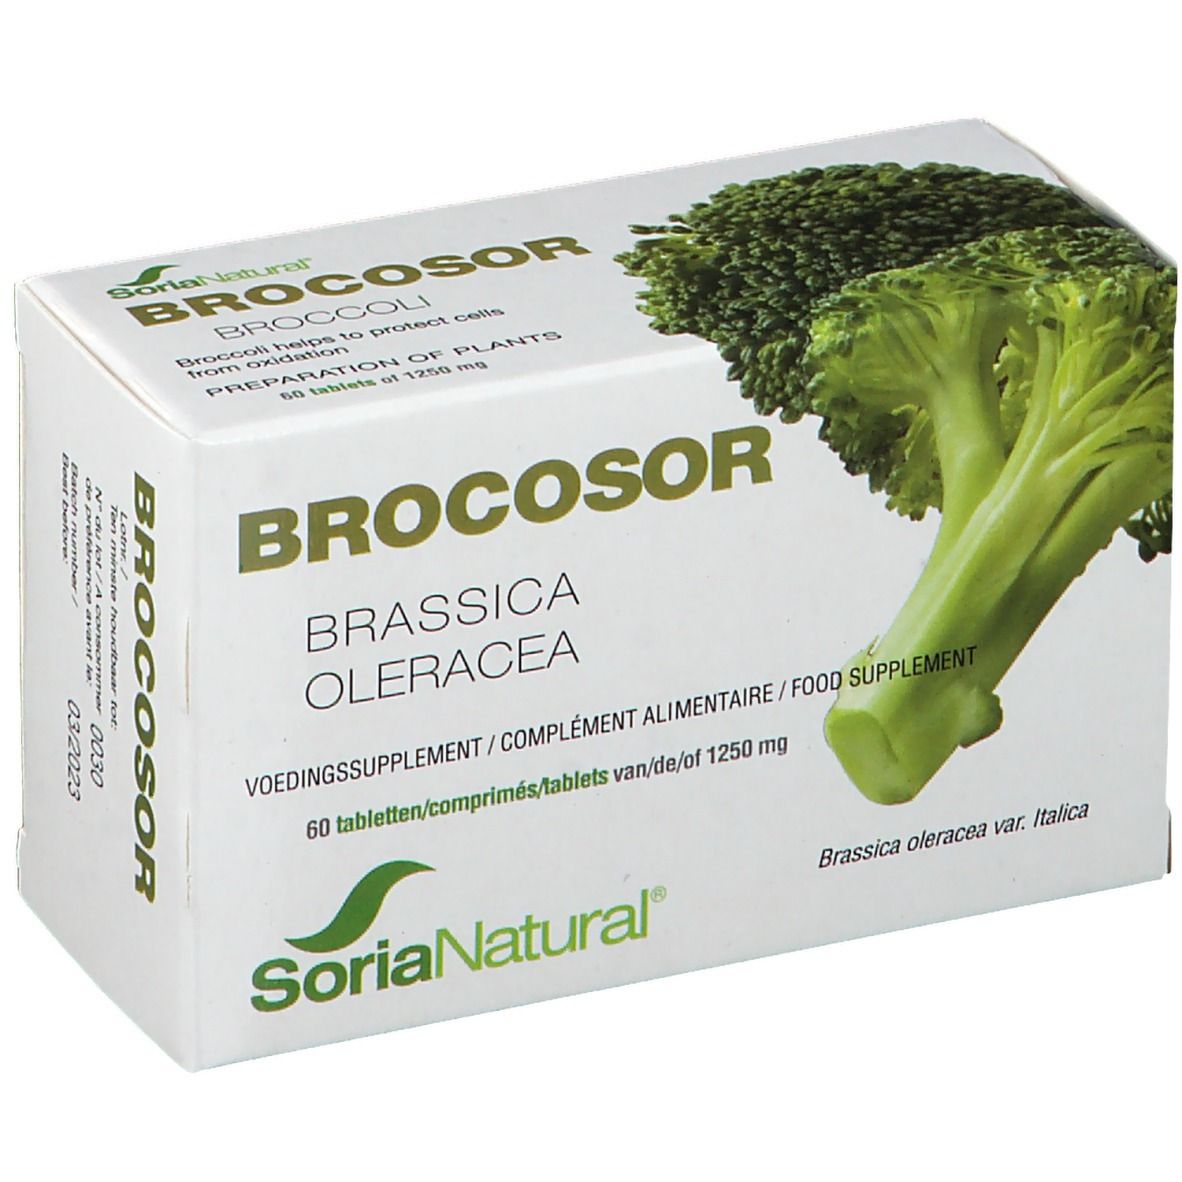 Soria Natural® Brocosor Tabletten